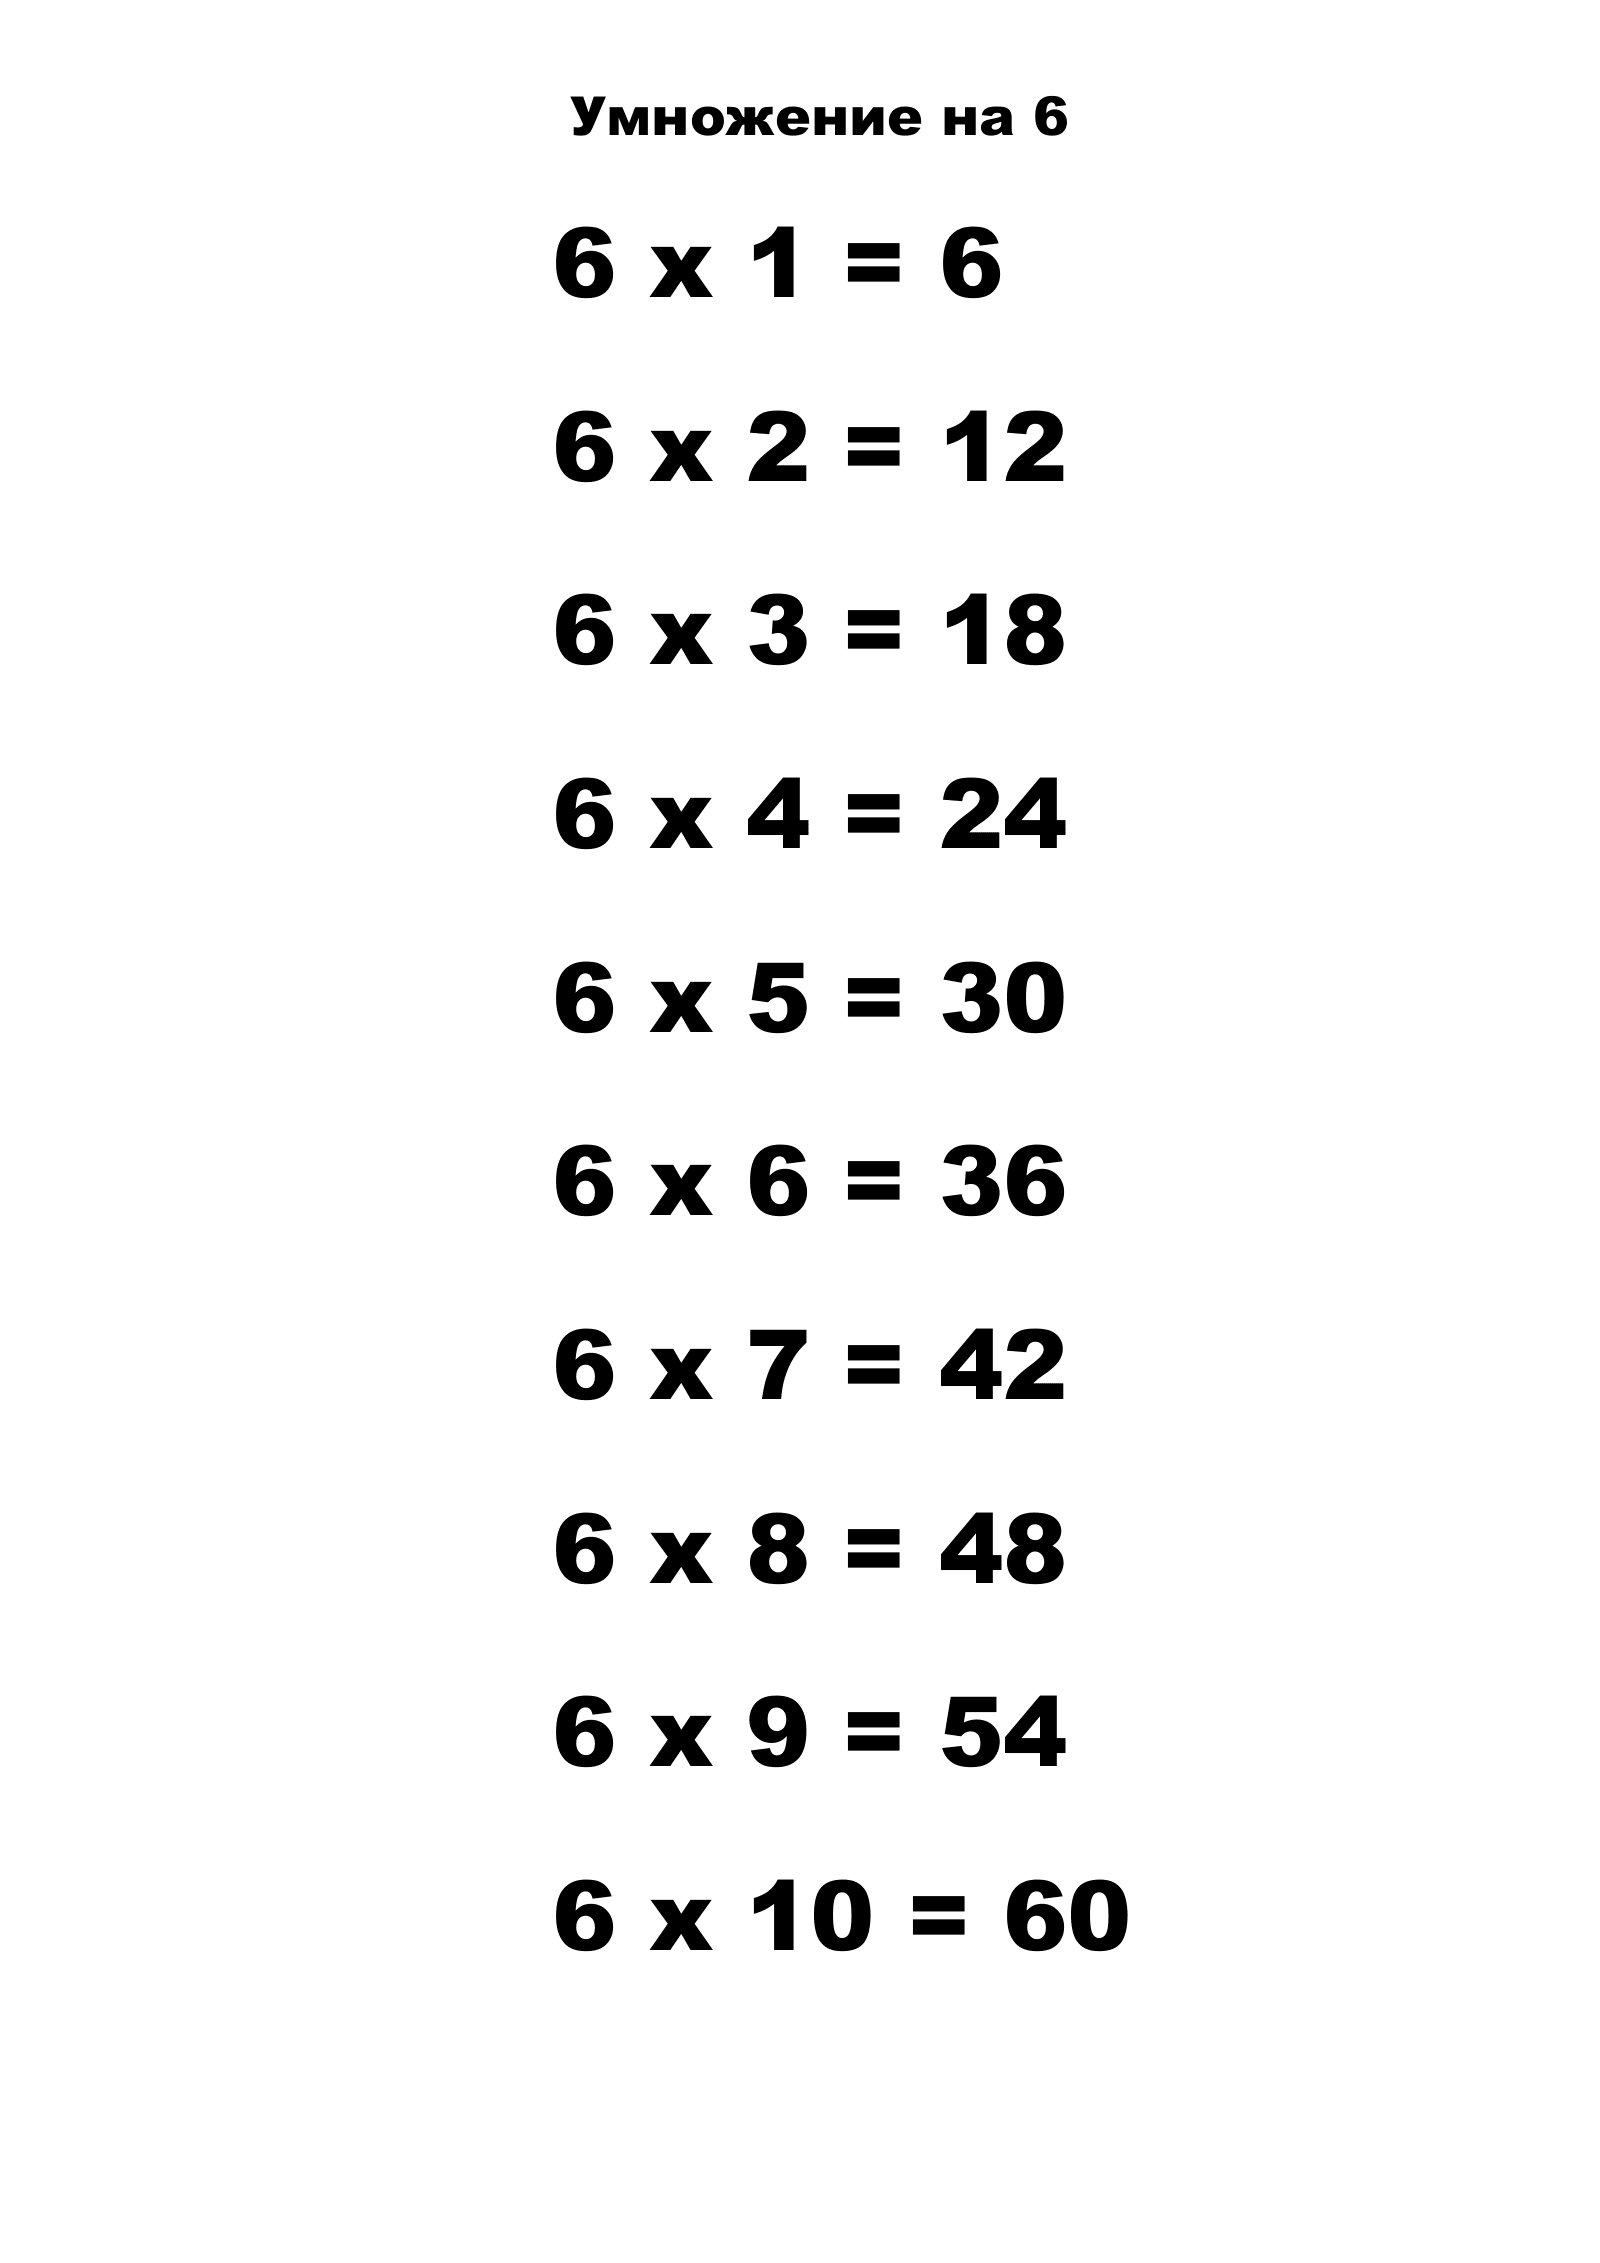 Таблица умножения на 6.